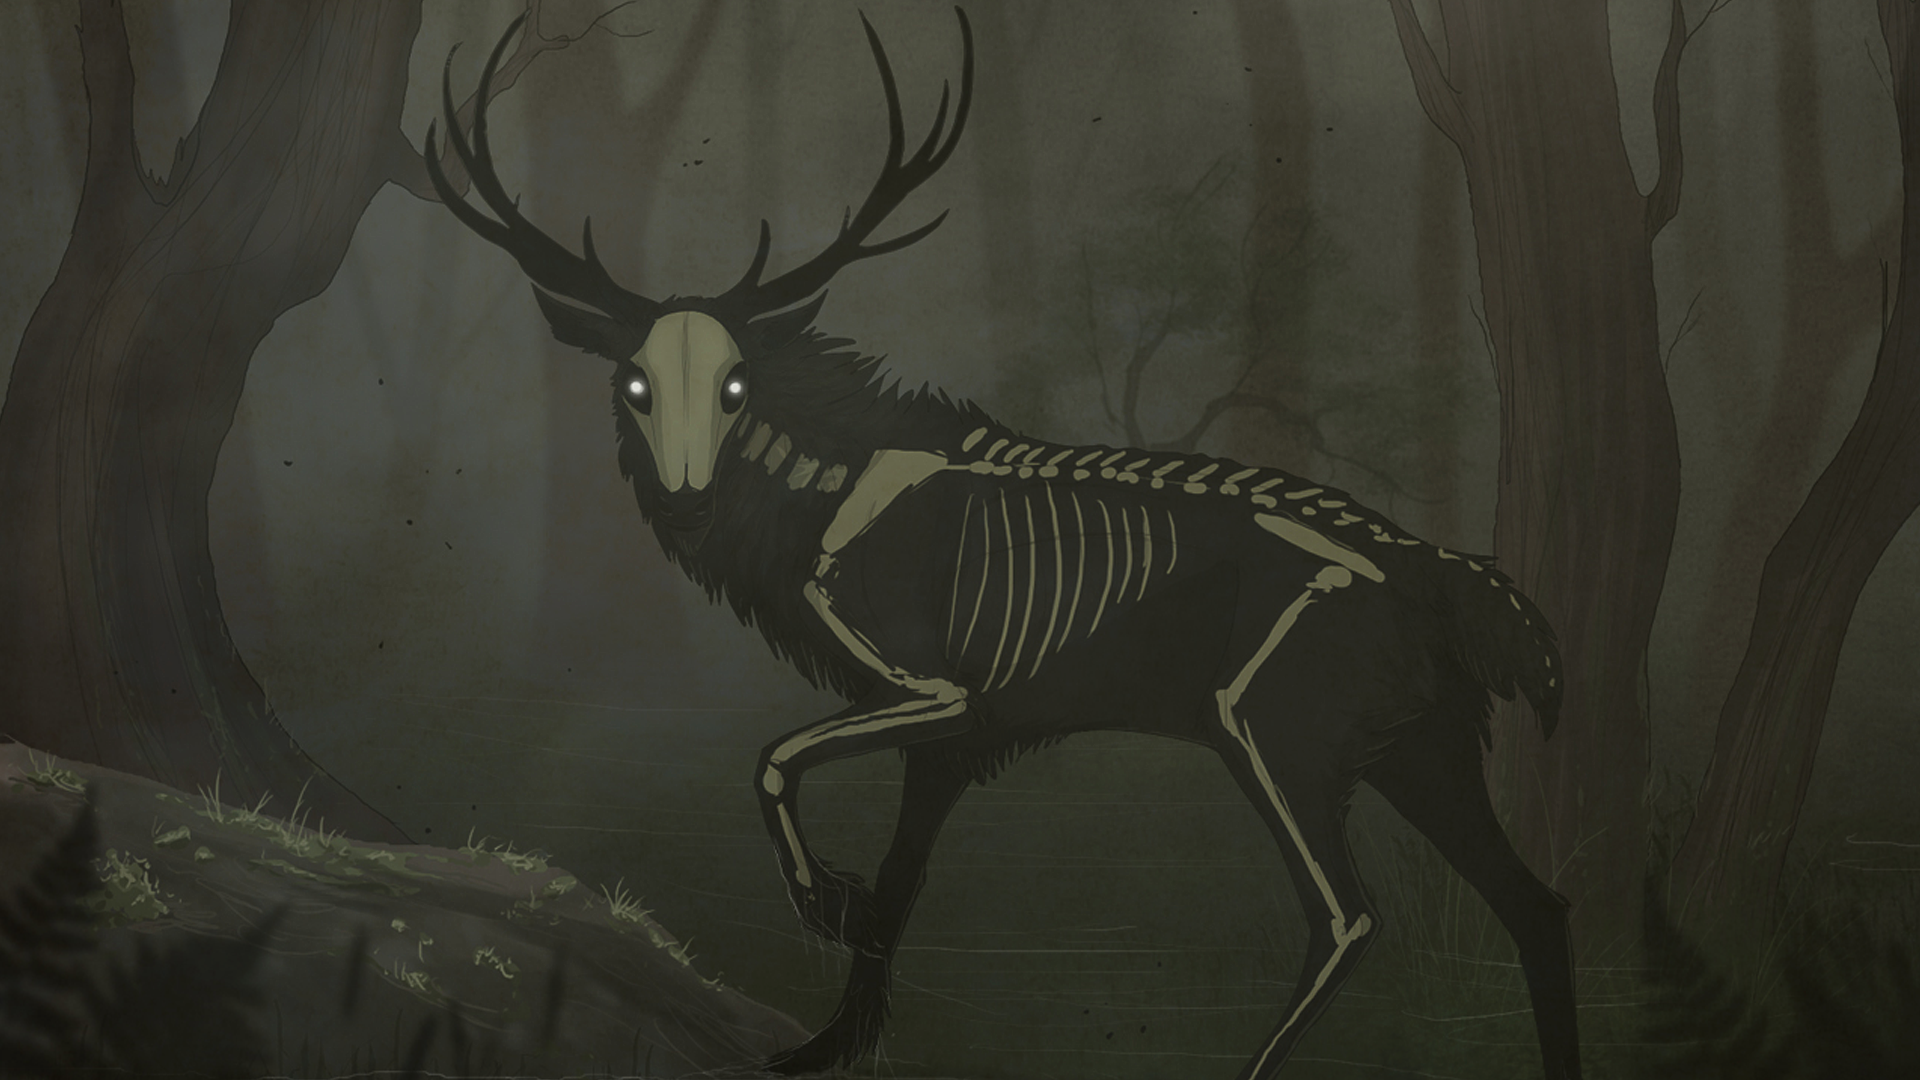 Wallpaper, creepy, creature, deer, skeleton, bones, skull, animals, glowing eyes, trees, forest 1920x1080